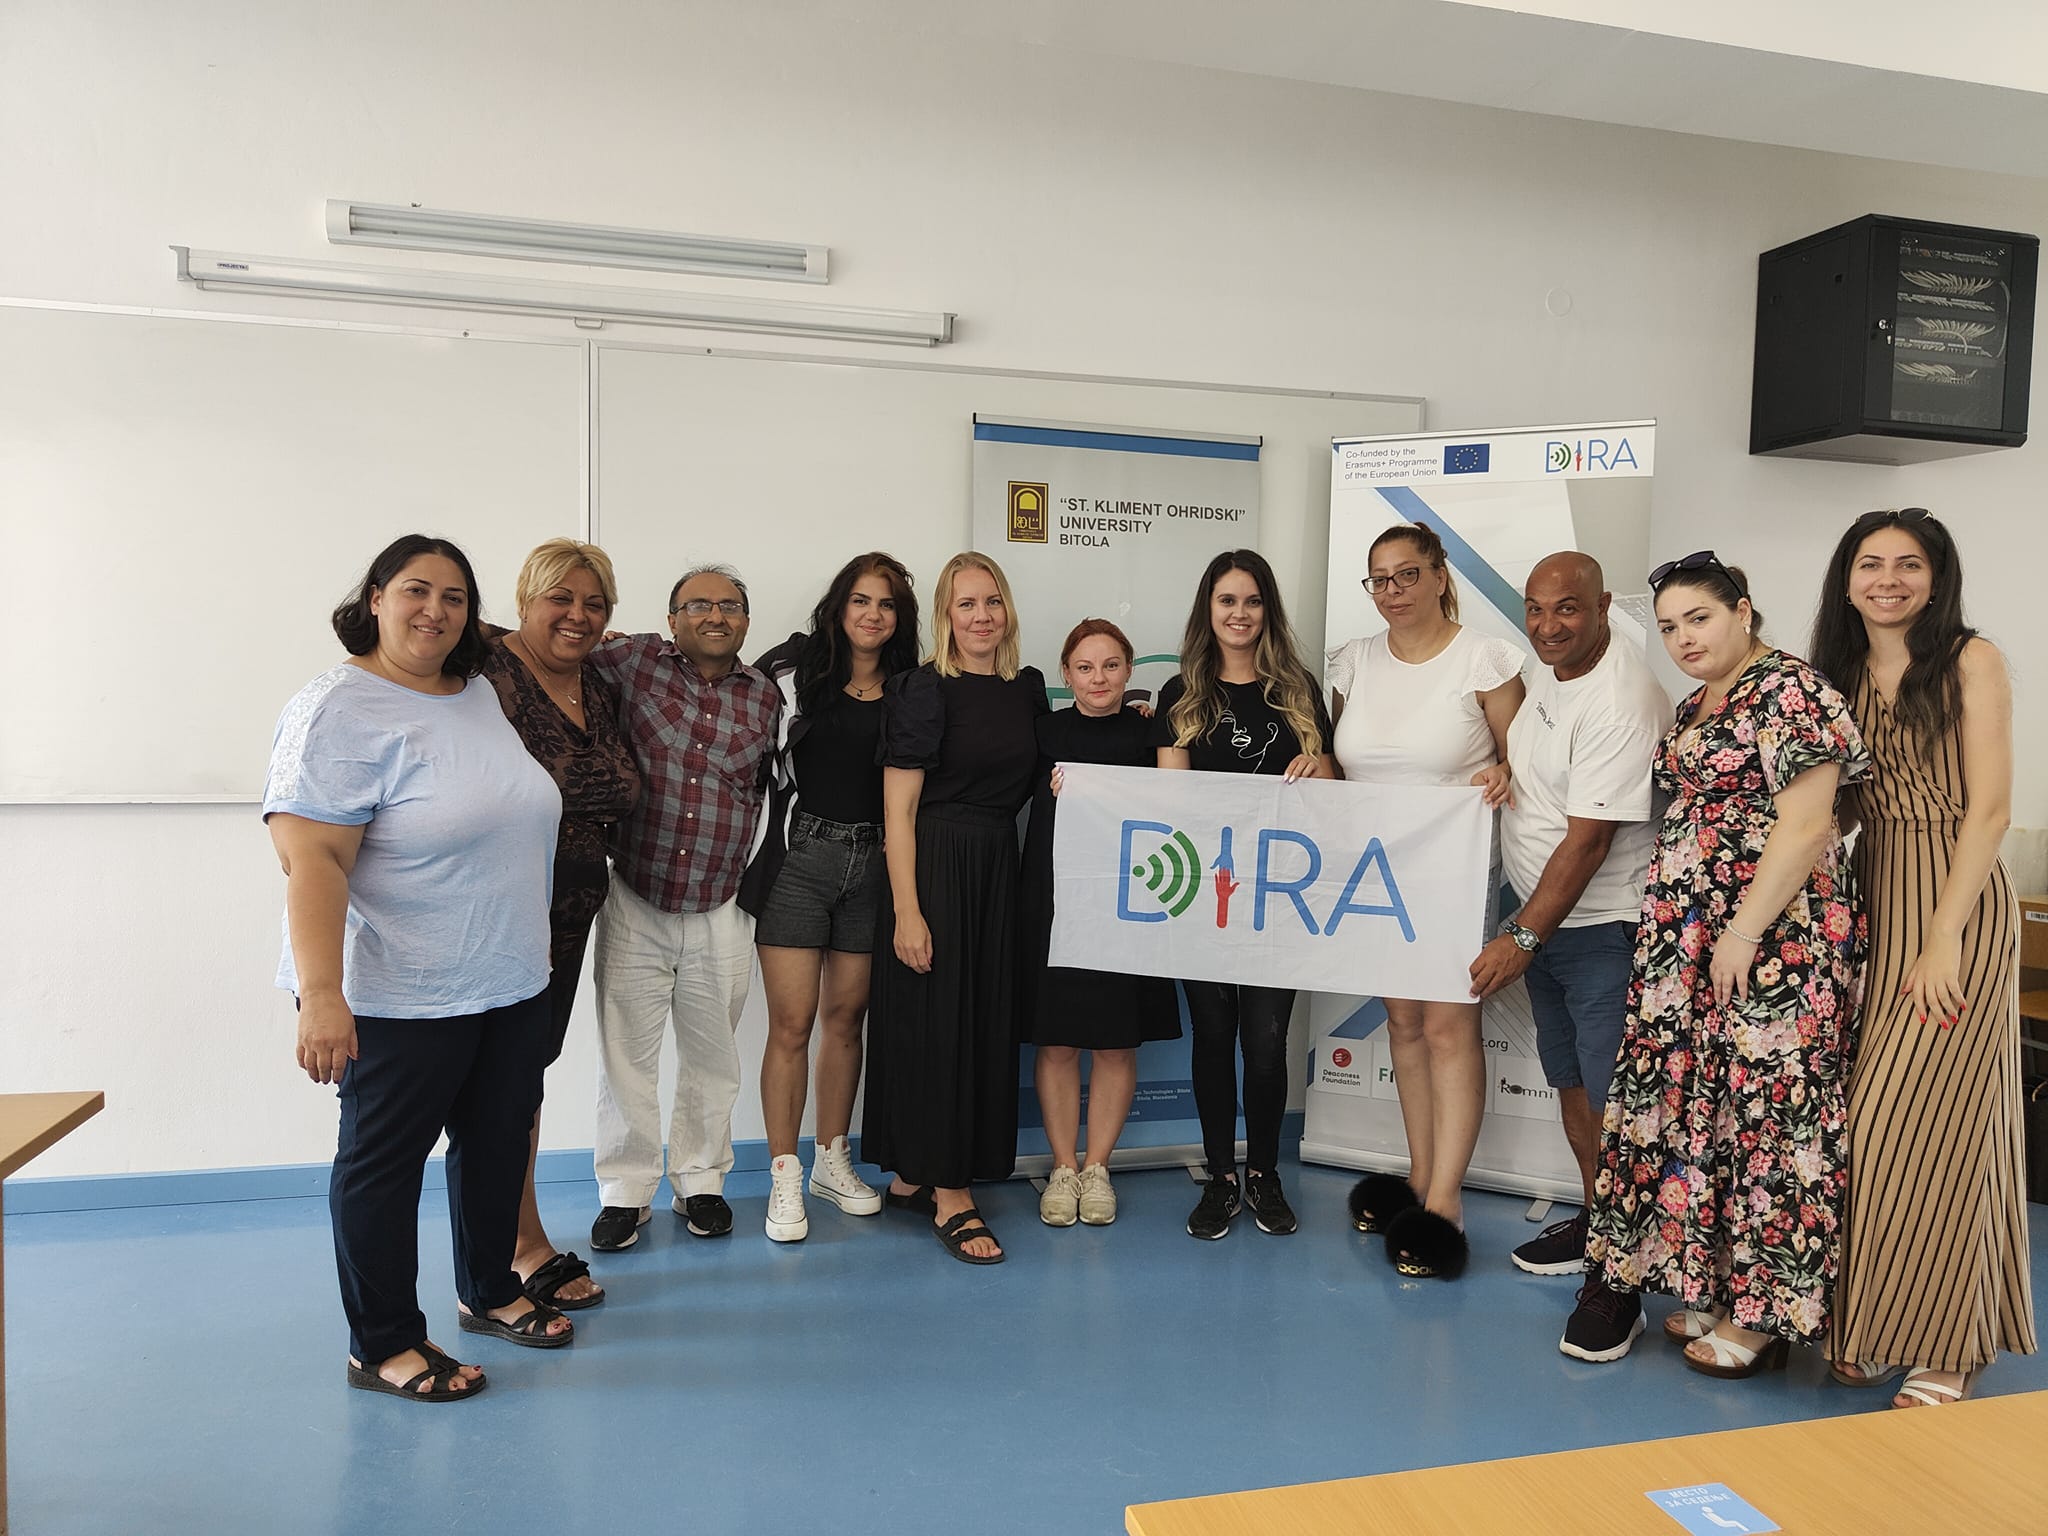  Il progetto DIRA presenta la piattaforma di apprendimento DIRA durante la formazione dei formato...